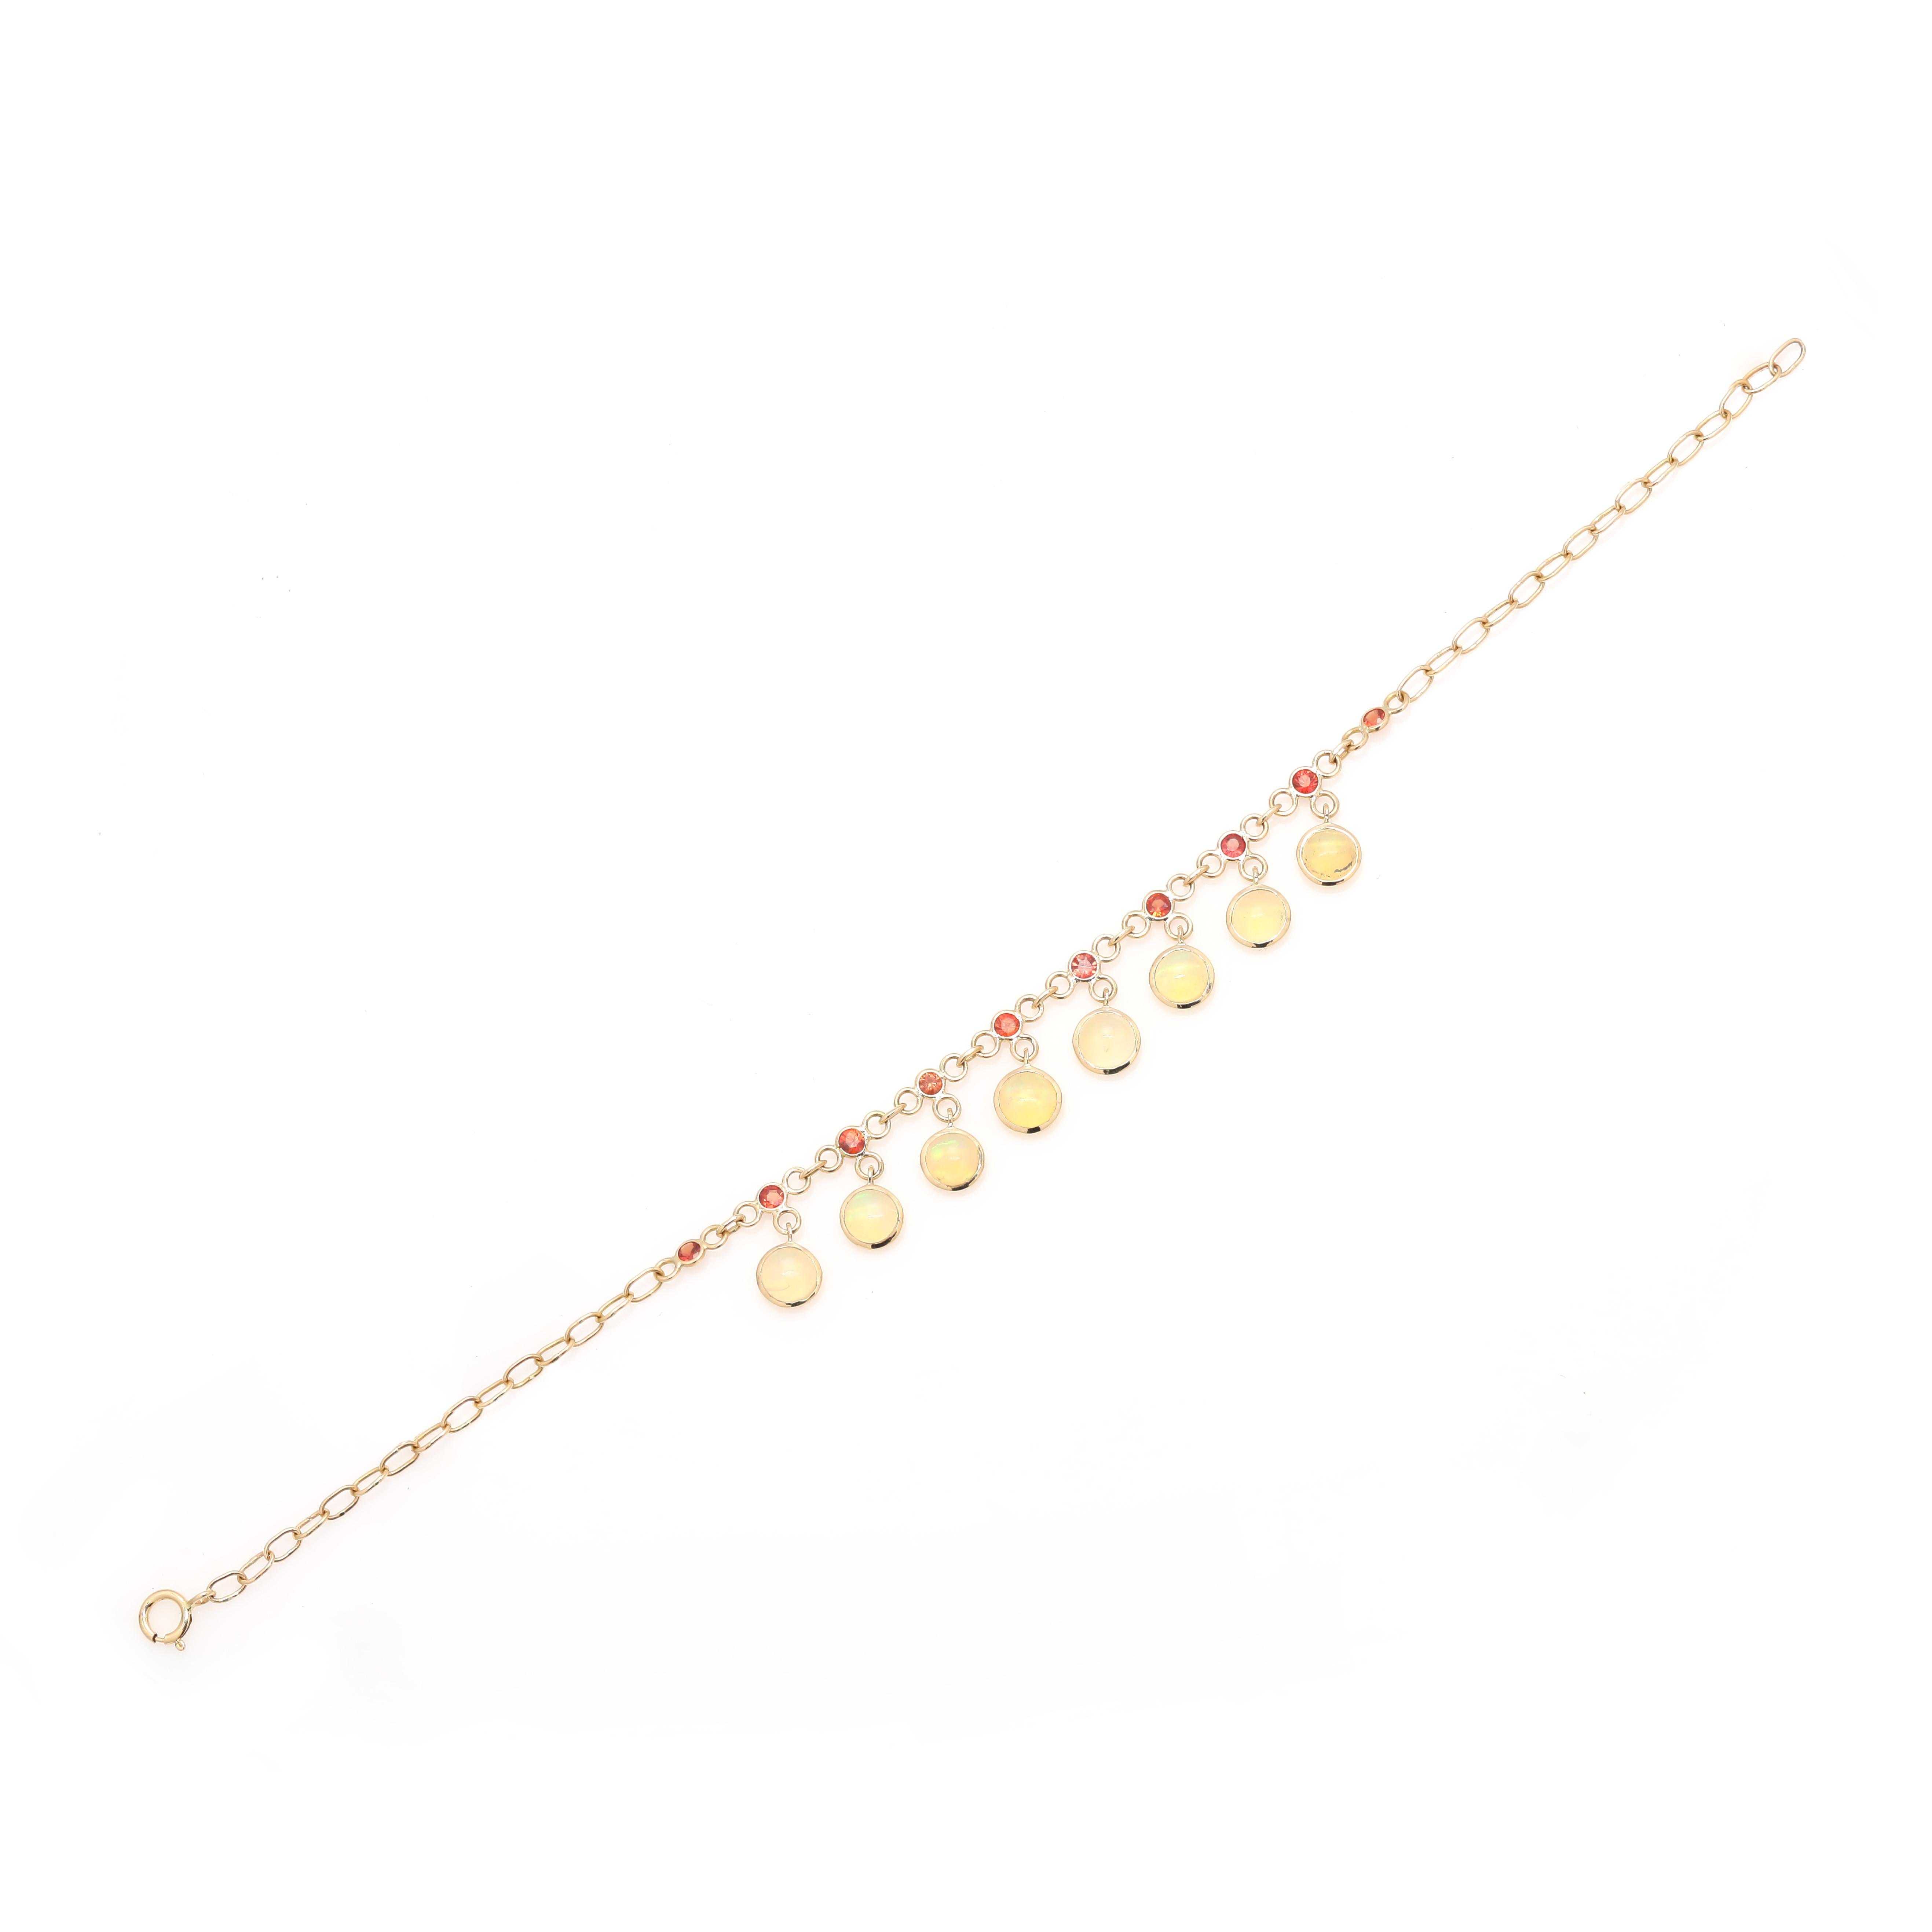 Ce bracelet minimaliste en chaîne de saphirs avec opale pendante en or 18 carats met en valeur 18 saphirs et opales naturels étincelants à l'infini, d'un poids de 3,08 carats. Il mesure 7,5 pouces de long. Le saphir stimule la concentration et